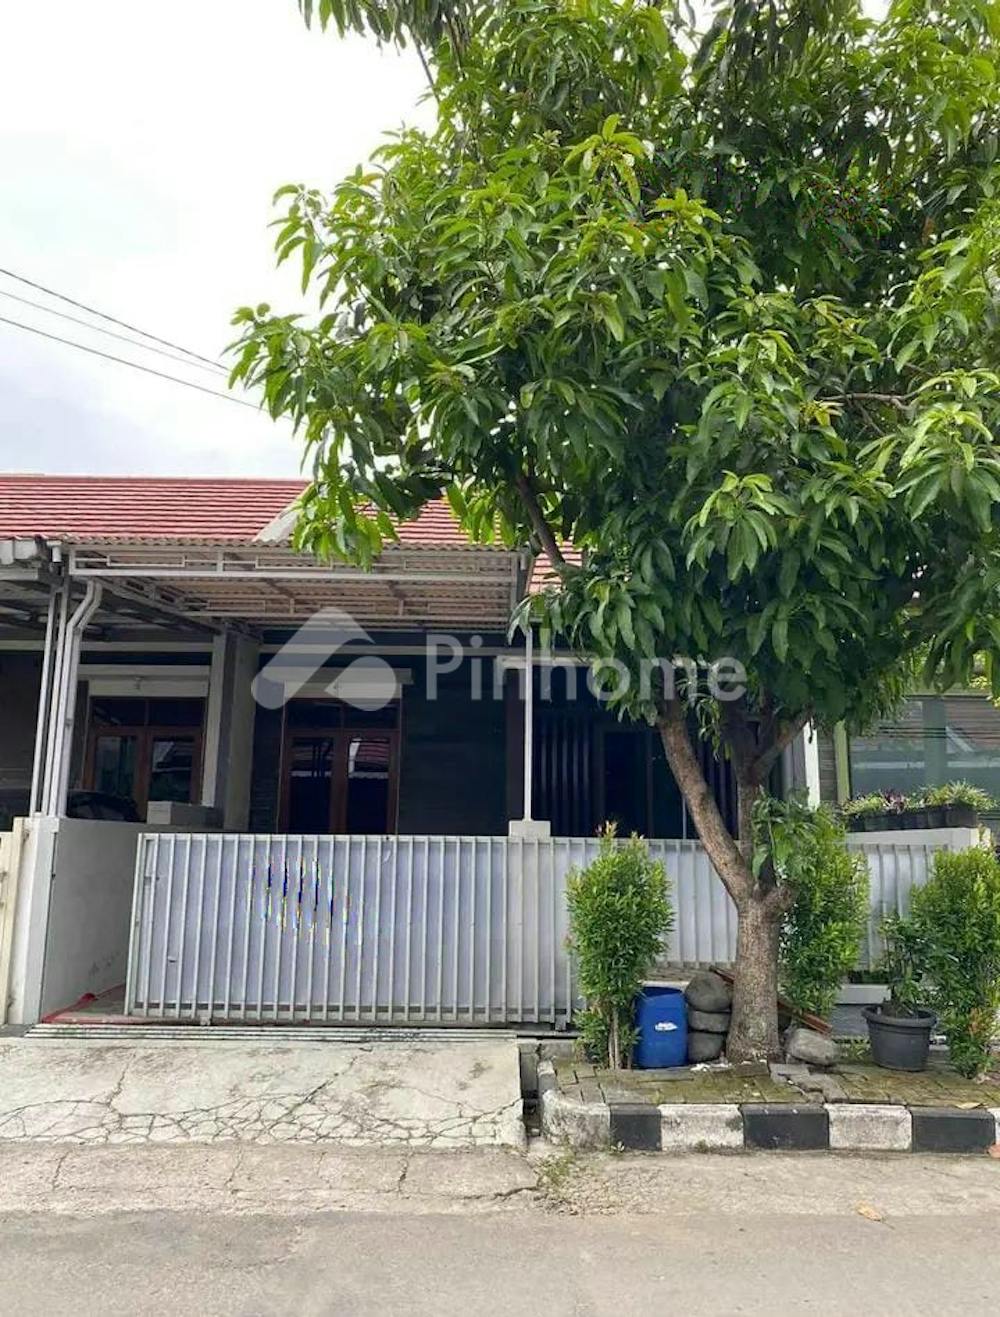 Disewakan Rumah Ready Stock di Komplek Antapani Kota Bandung Rp50 Juta/bulan | Pinhome